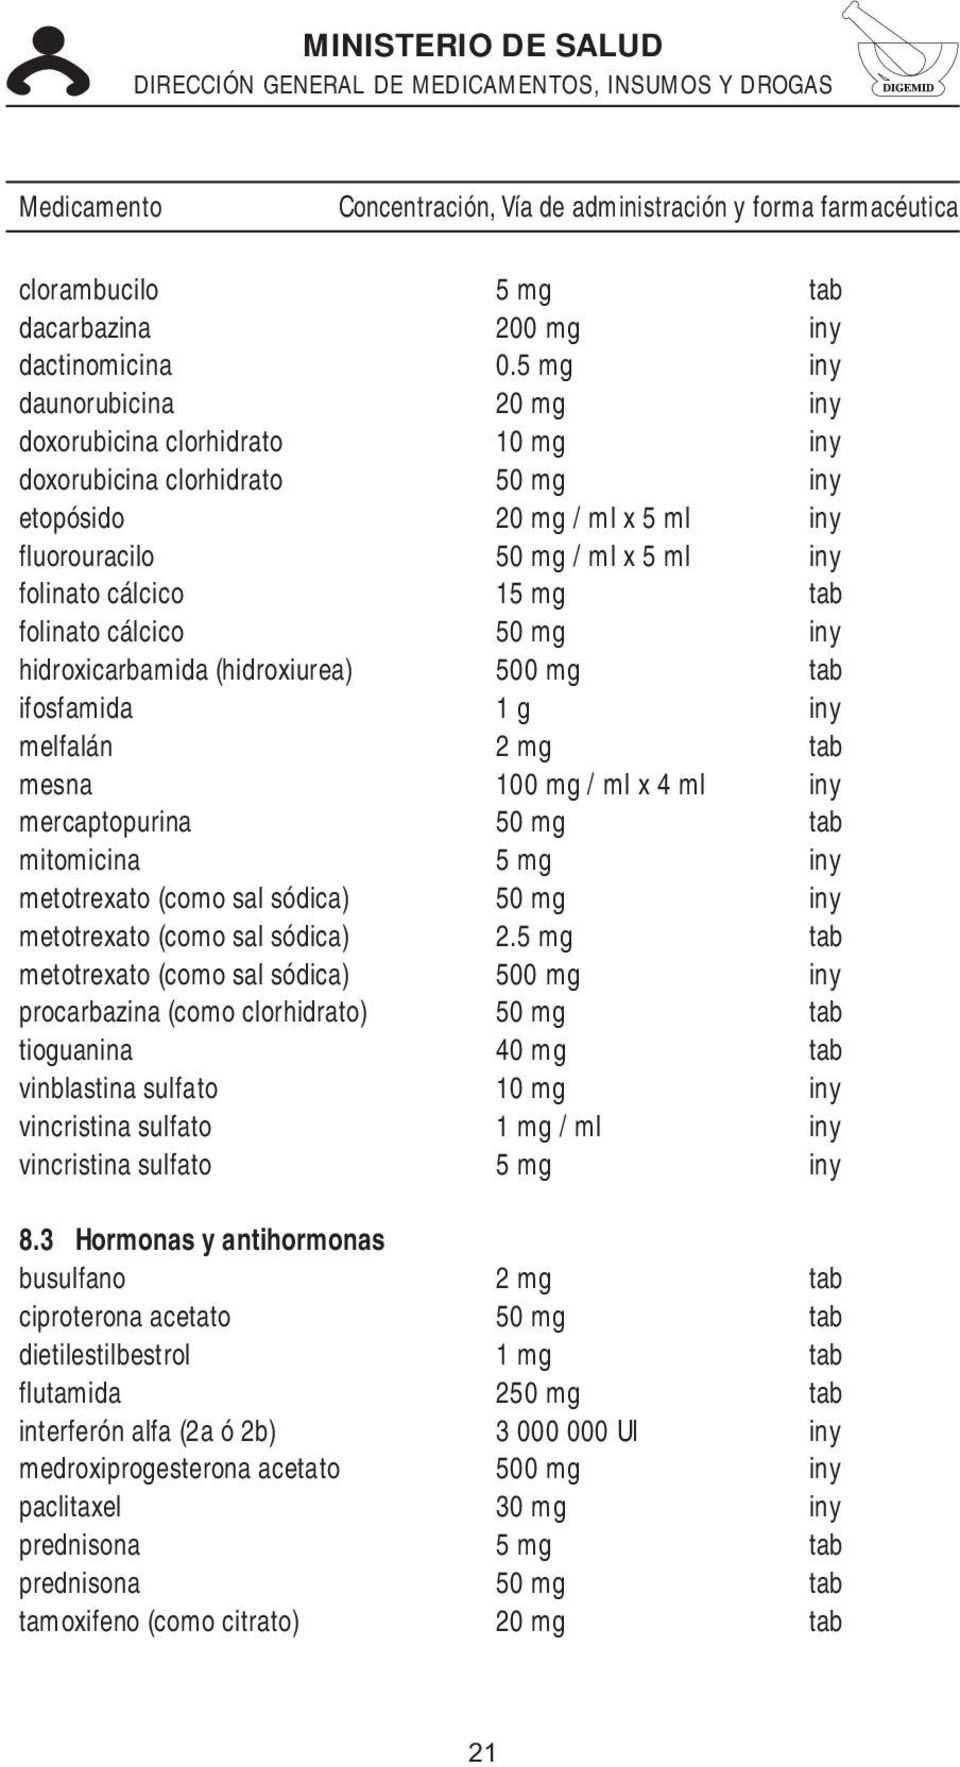 folinato cálcico 50 mg iny hidroxicarbamida (hidroxiurea) 500 mg tab ifosfamida 1 g iny melfalán 2 mg tab mesna 100 mg / ml x 4 ml iny mercaptopurina 50 mg tab mitomicina 5 mg iny metotrexato (como